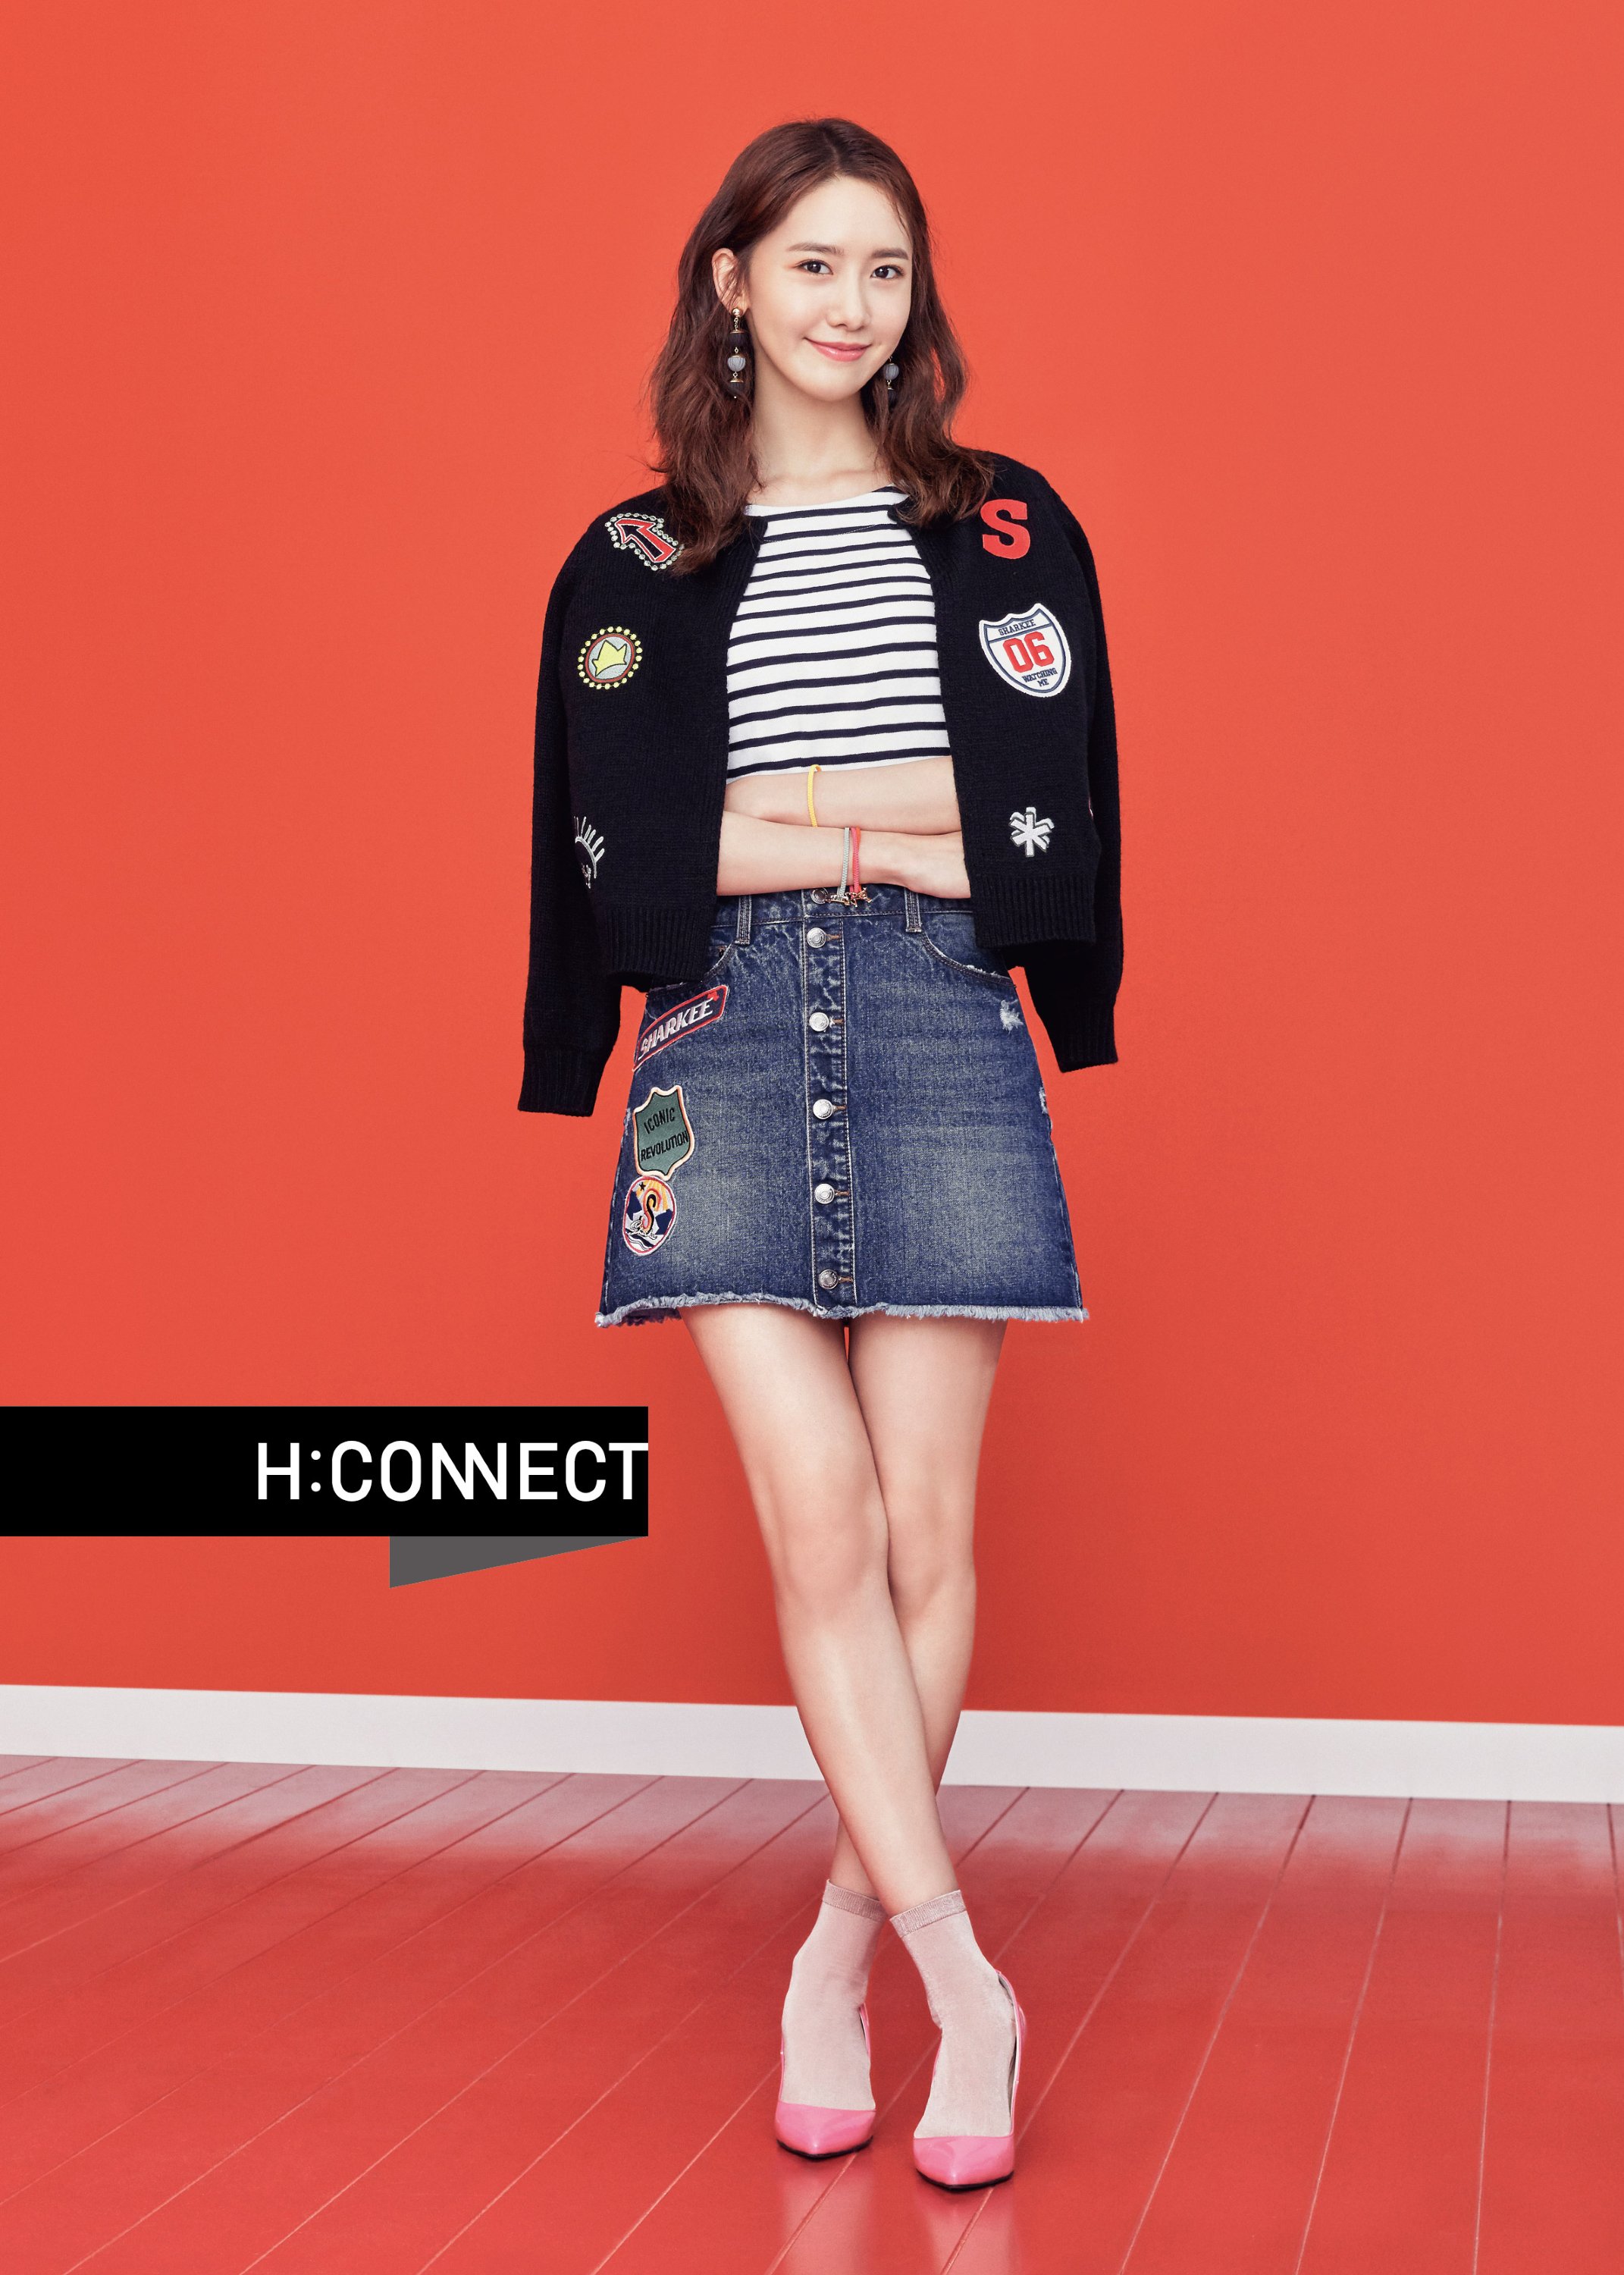 [OTHER][27-07-2015]YoonA trở thành người mẫu mới cho dòng thời trang "H:CONNECT" - Page 7 O9XqxbTxBP-3000x3000